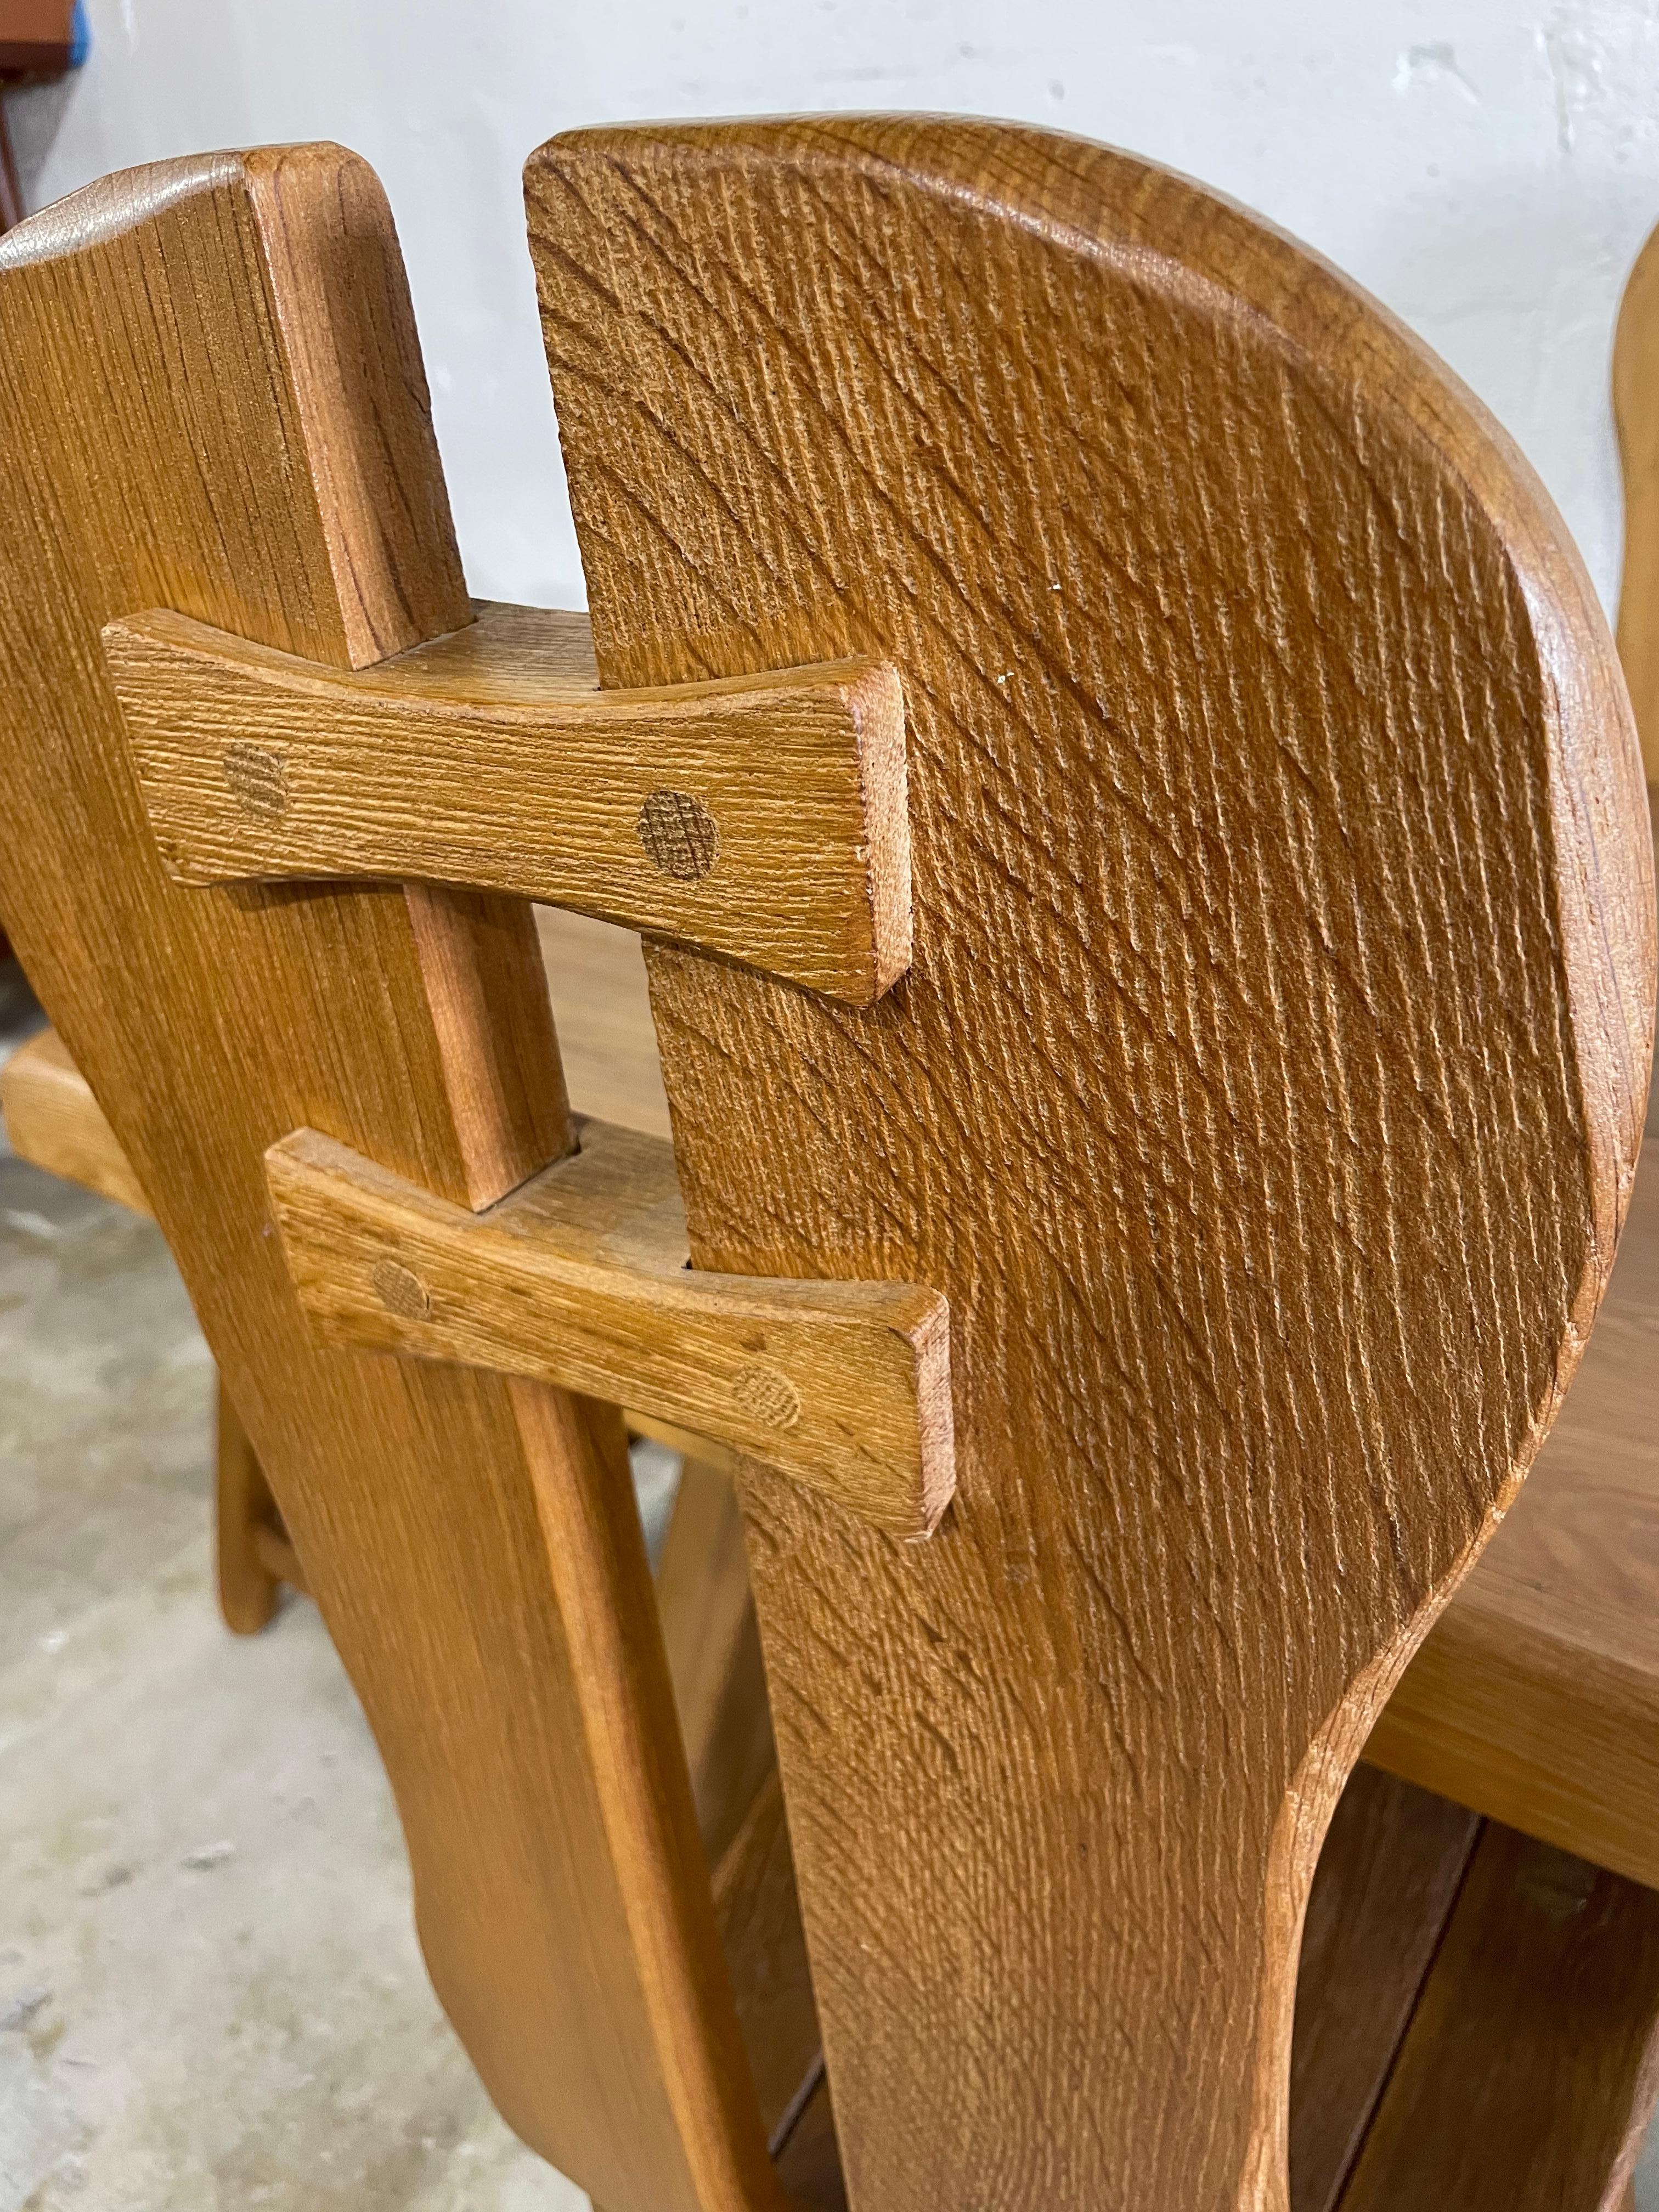 Table à manger sculpturale brutaliste et 4 chaises, par De Puydt. Belgique. Des pièces lourdes. Chaises hautes. L'ensemble est fabriqué en bois de chêne massif et construit avec des joints visibles. Table à tréteaux en chêne. 
Mesures : Les chaises